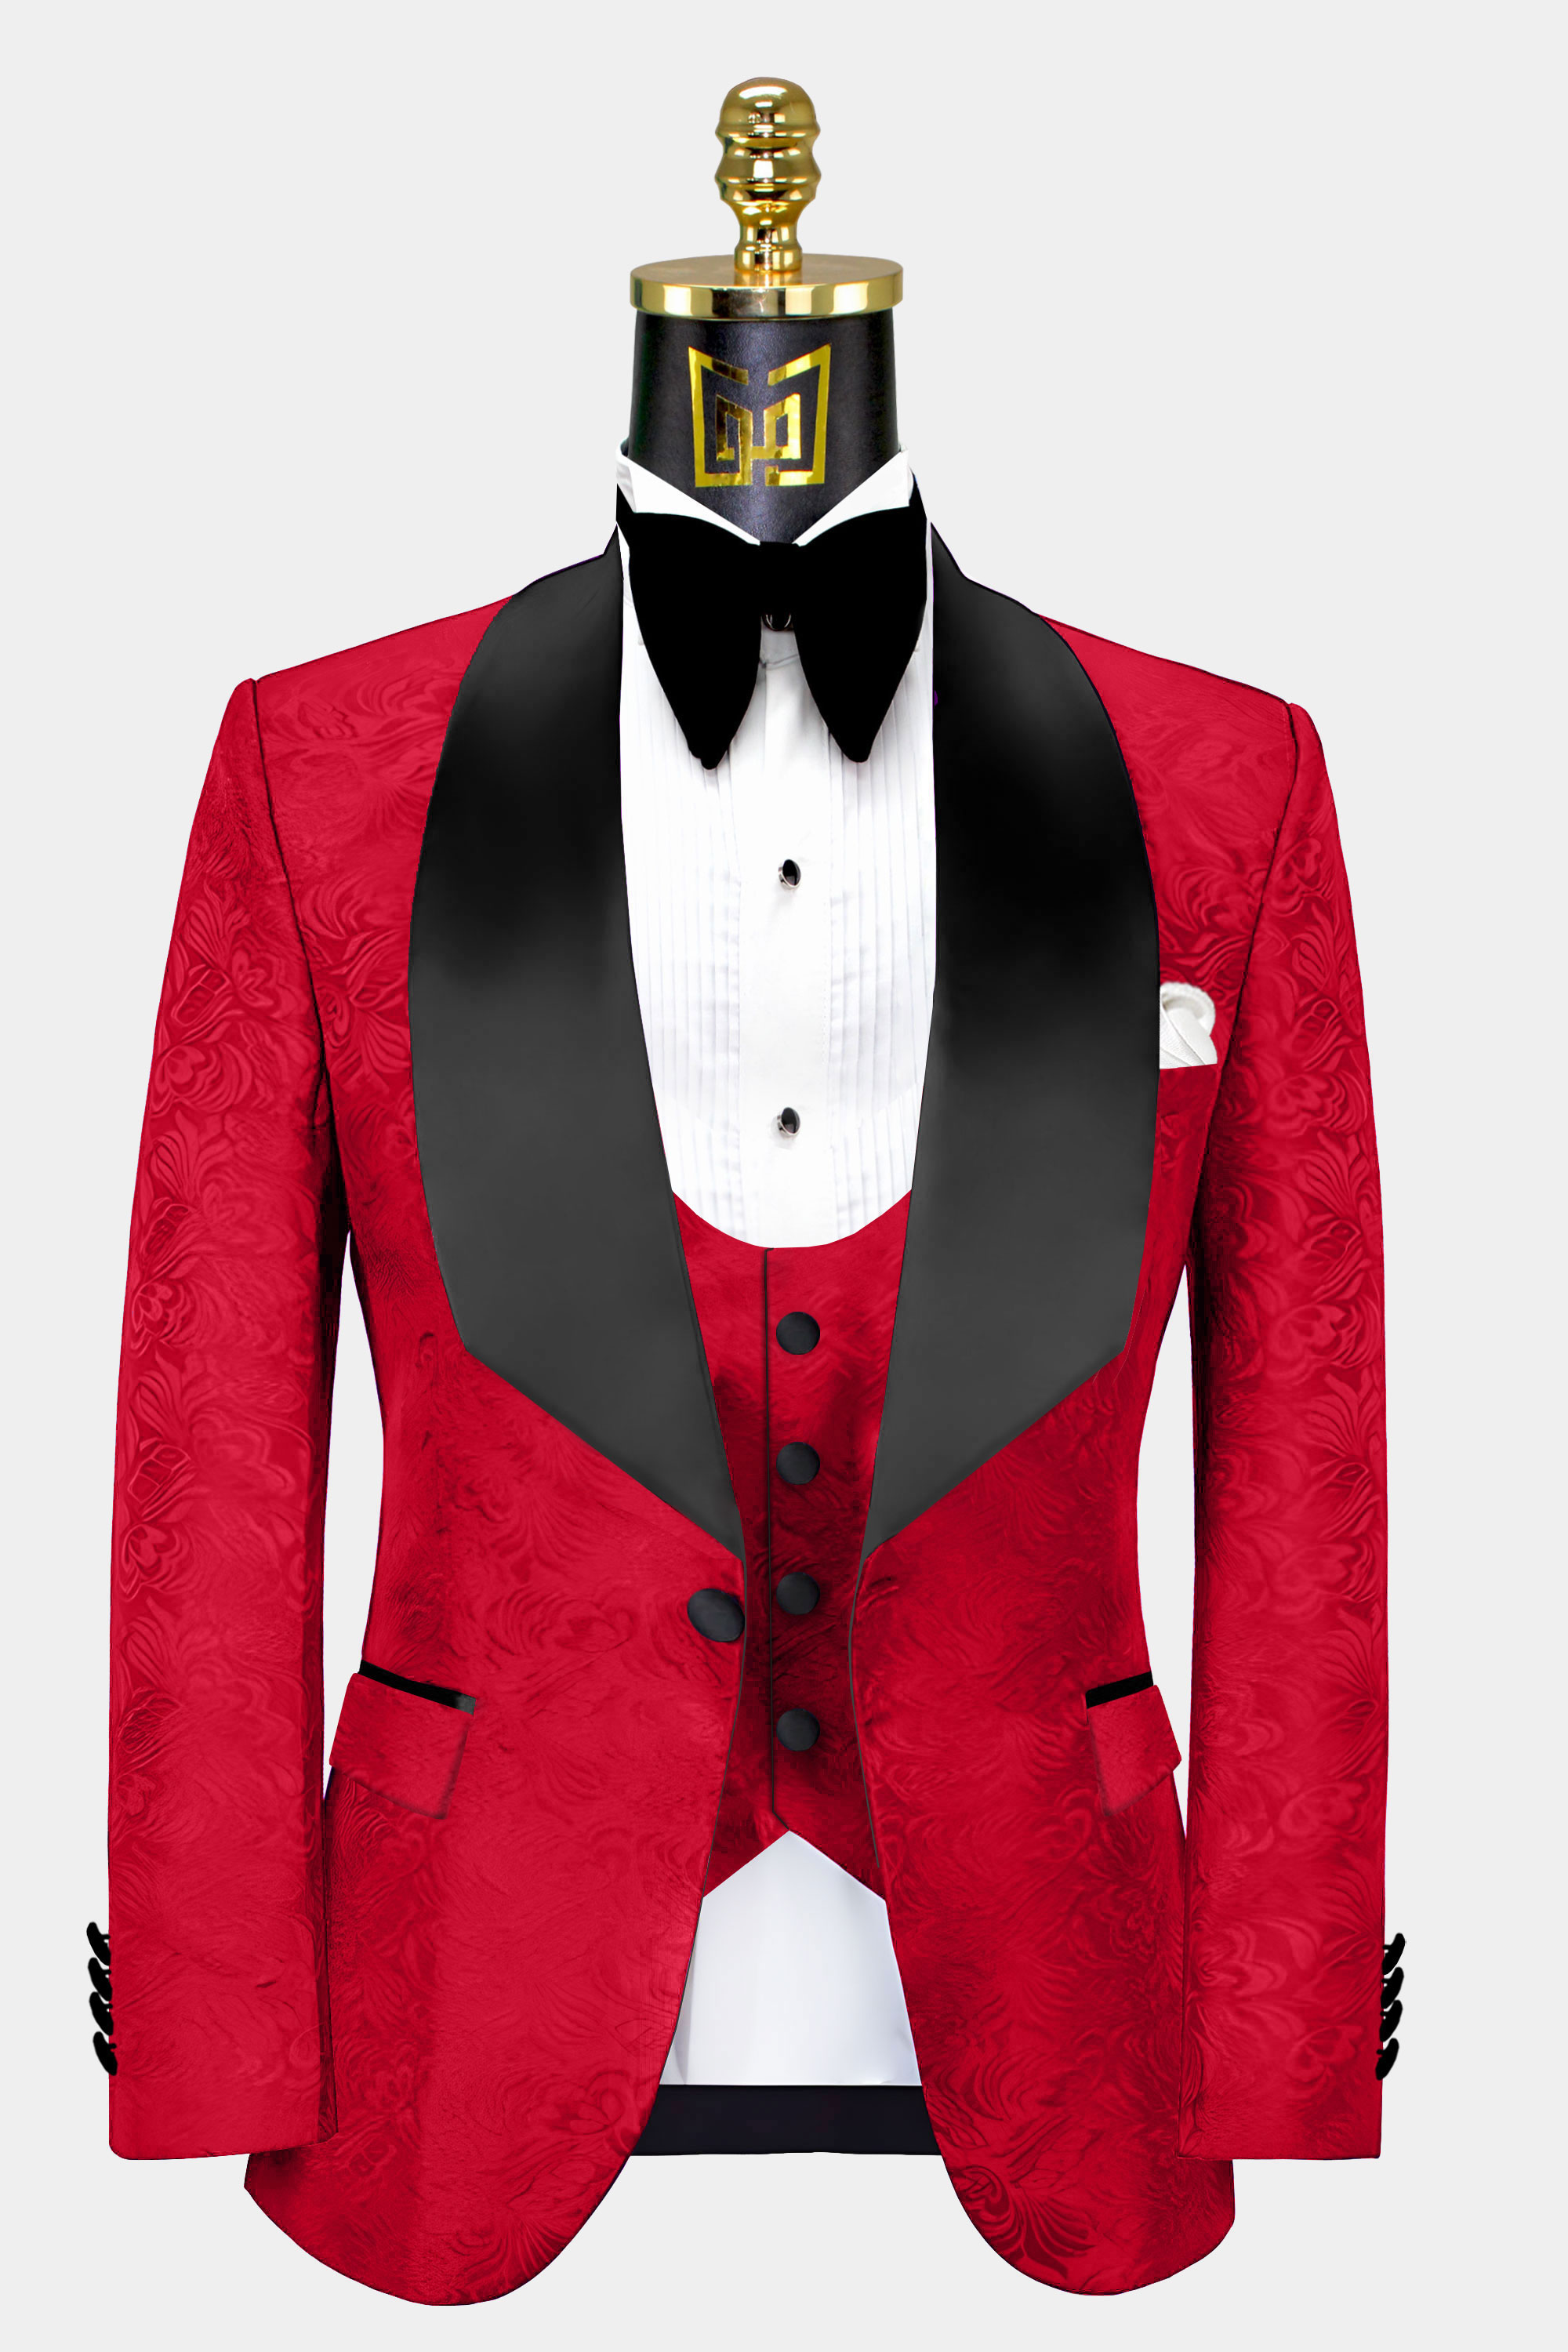 Red-and-Black-Wedding-Suit-Groom-Prom-Tuxedo-Jacket-from-Gentlemansguru.com